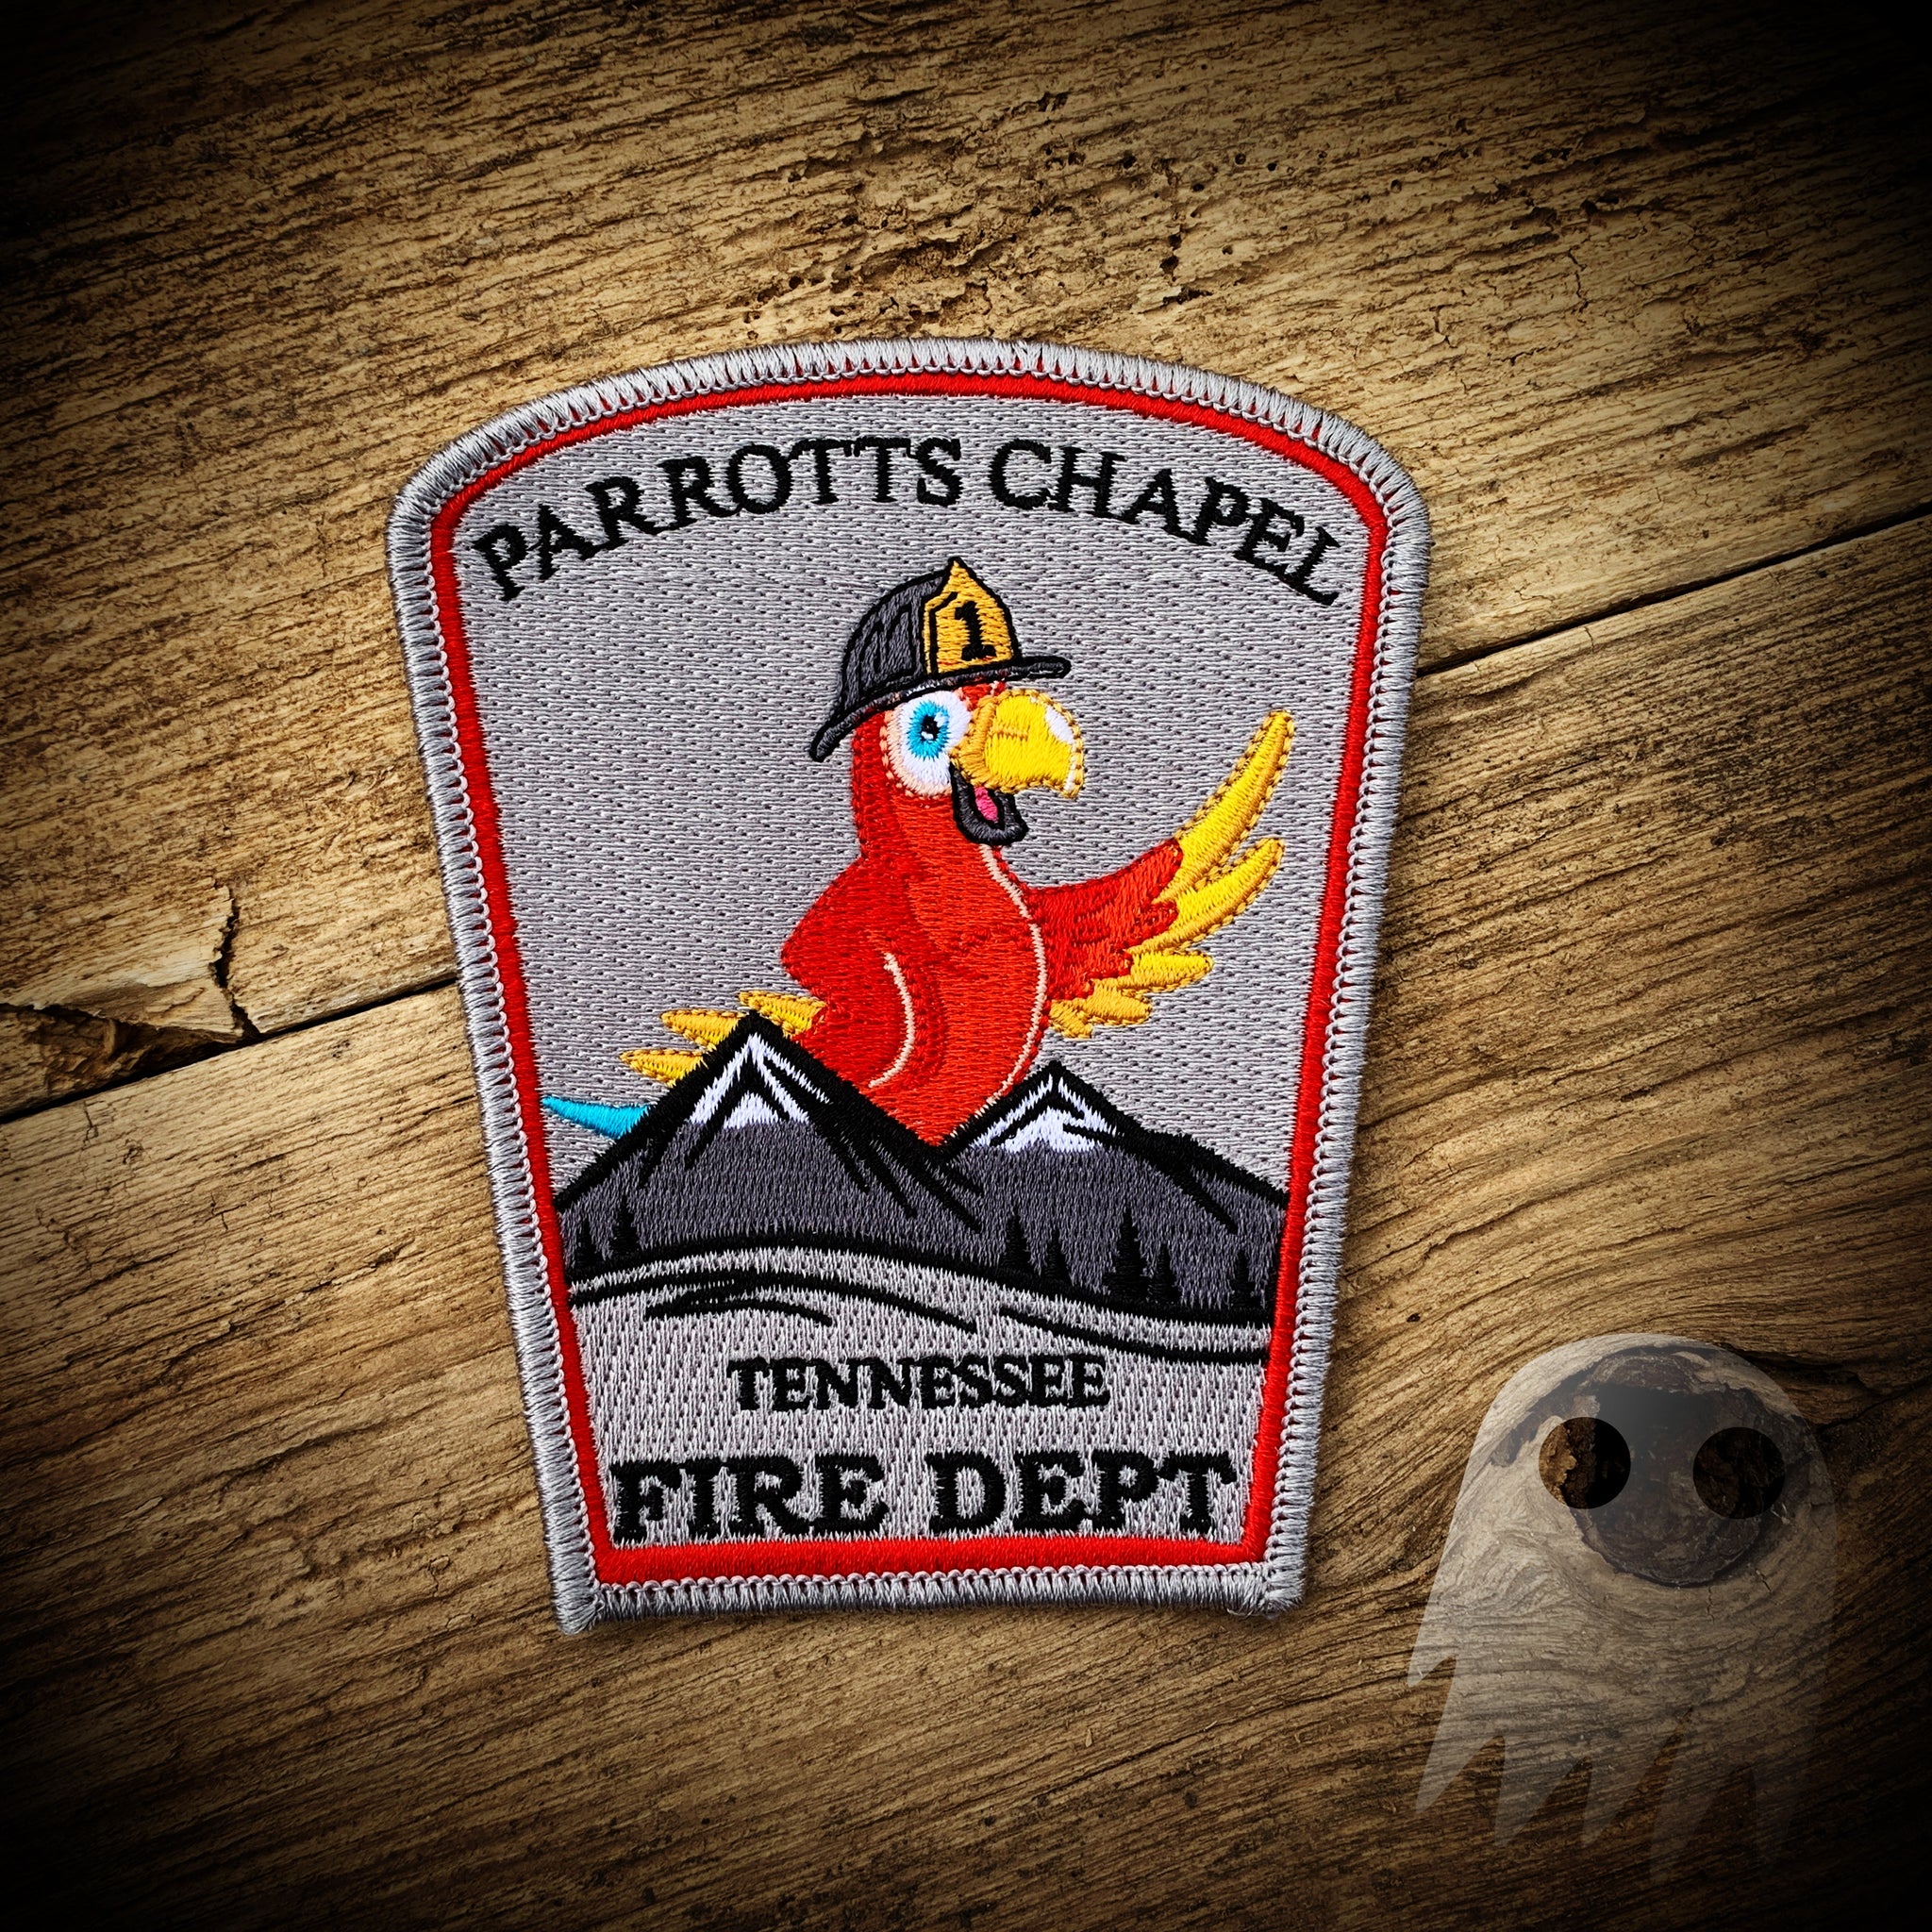 AUTHENTIC - Parrotts Chapel TN Fire Department